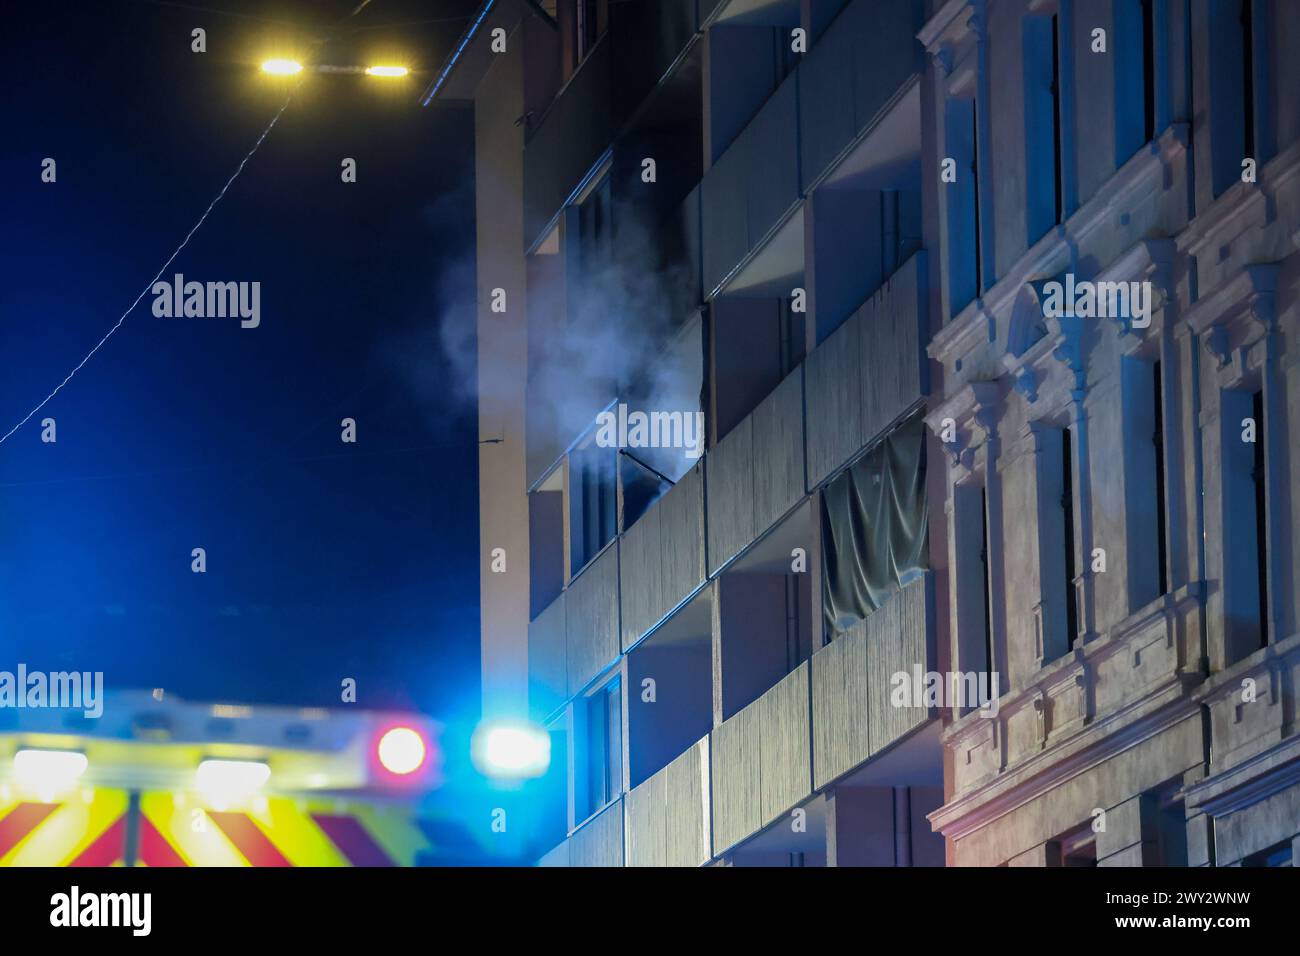 Ausgedehnter Wohnungsbrand in Wuppertal-Wichlinghausen am späten Mittwochabend kam es gegen 23 Uhr zu einem ausgedehnten Wohnungsbrand in Wuppertal-Wichlinghausen. ALS die Feuerwehr eintraf schlugen die Flammen bereits meterhoch aus den Fenstern der Wohnung im 2. Obergeschoss. DAS Übergreifen auf die oberen Etagen stand kurz bevor, mit einem raschen Außenangriff konnten die Flammen zurückgedrückt werden. Mehrere Menschen mussten durch den verrauchten Treppenraum und 5 Menschen über Drehleitern gerettet werden. Der Bewohner der Brandwohnung hatte sich vor dem Eintreffen selbstständig ins Freie Foto Stock